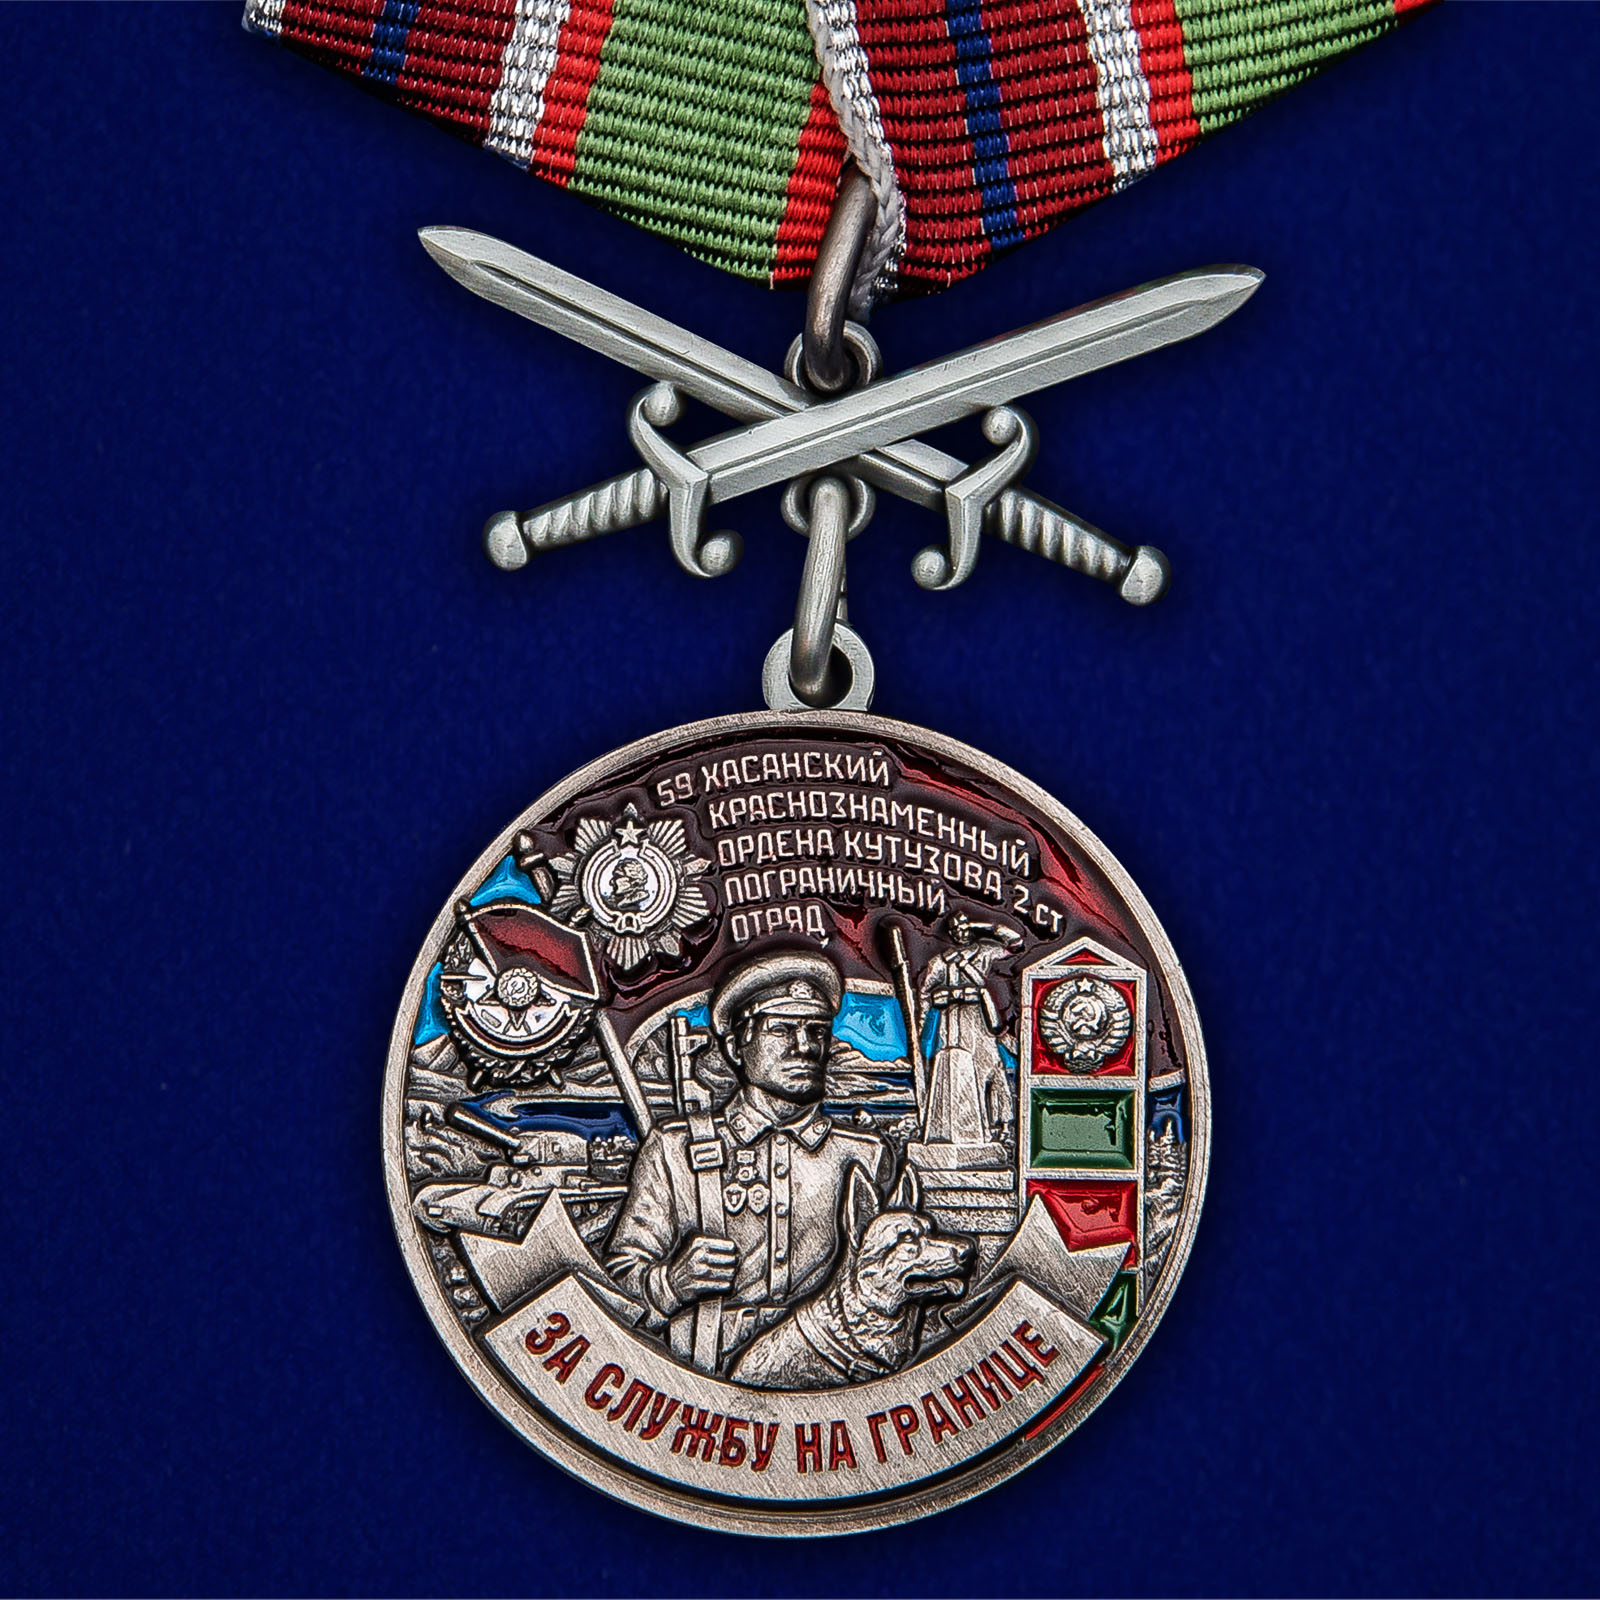 Купить медаль За службу в Хасанском пограничном отряде онлайн